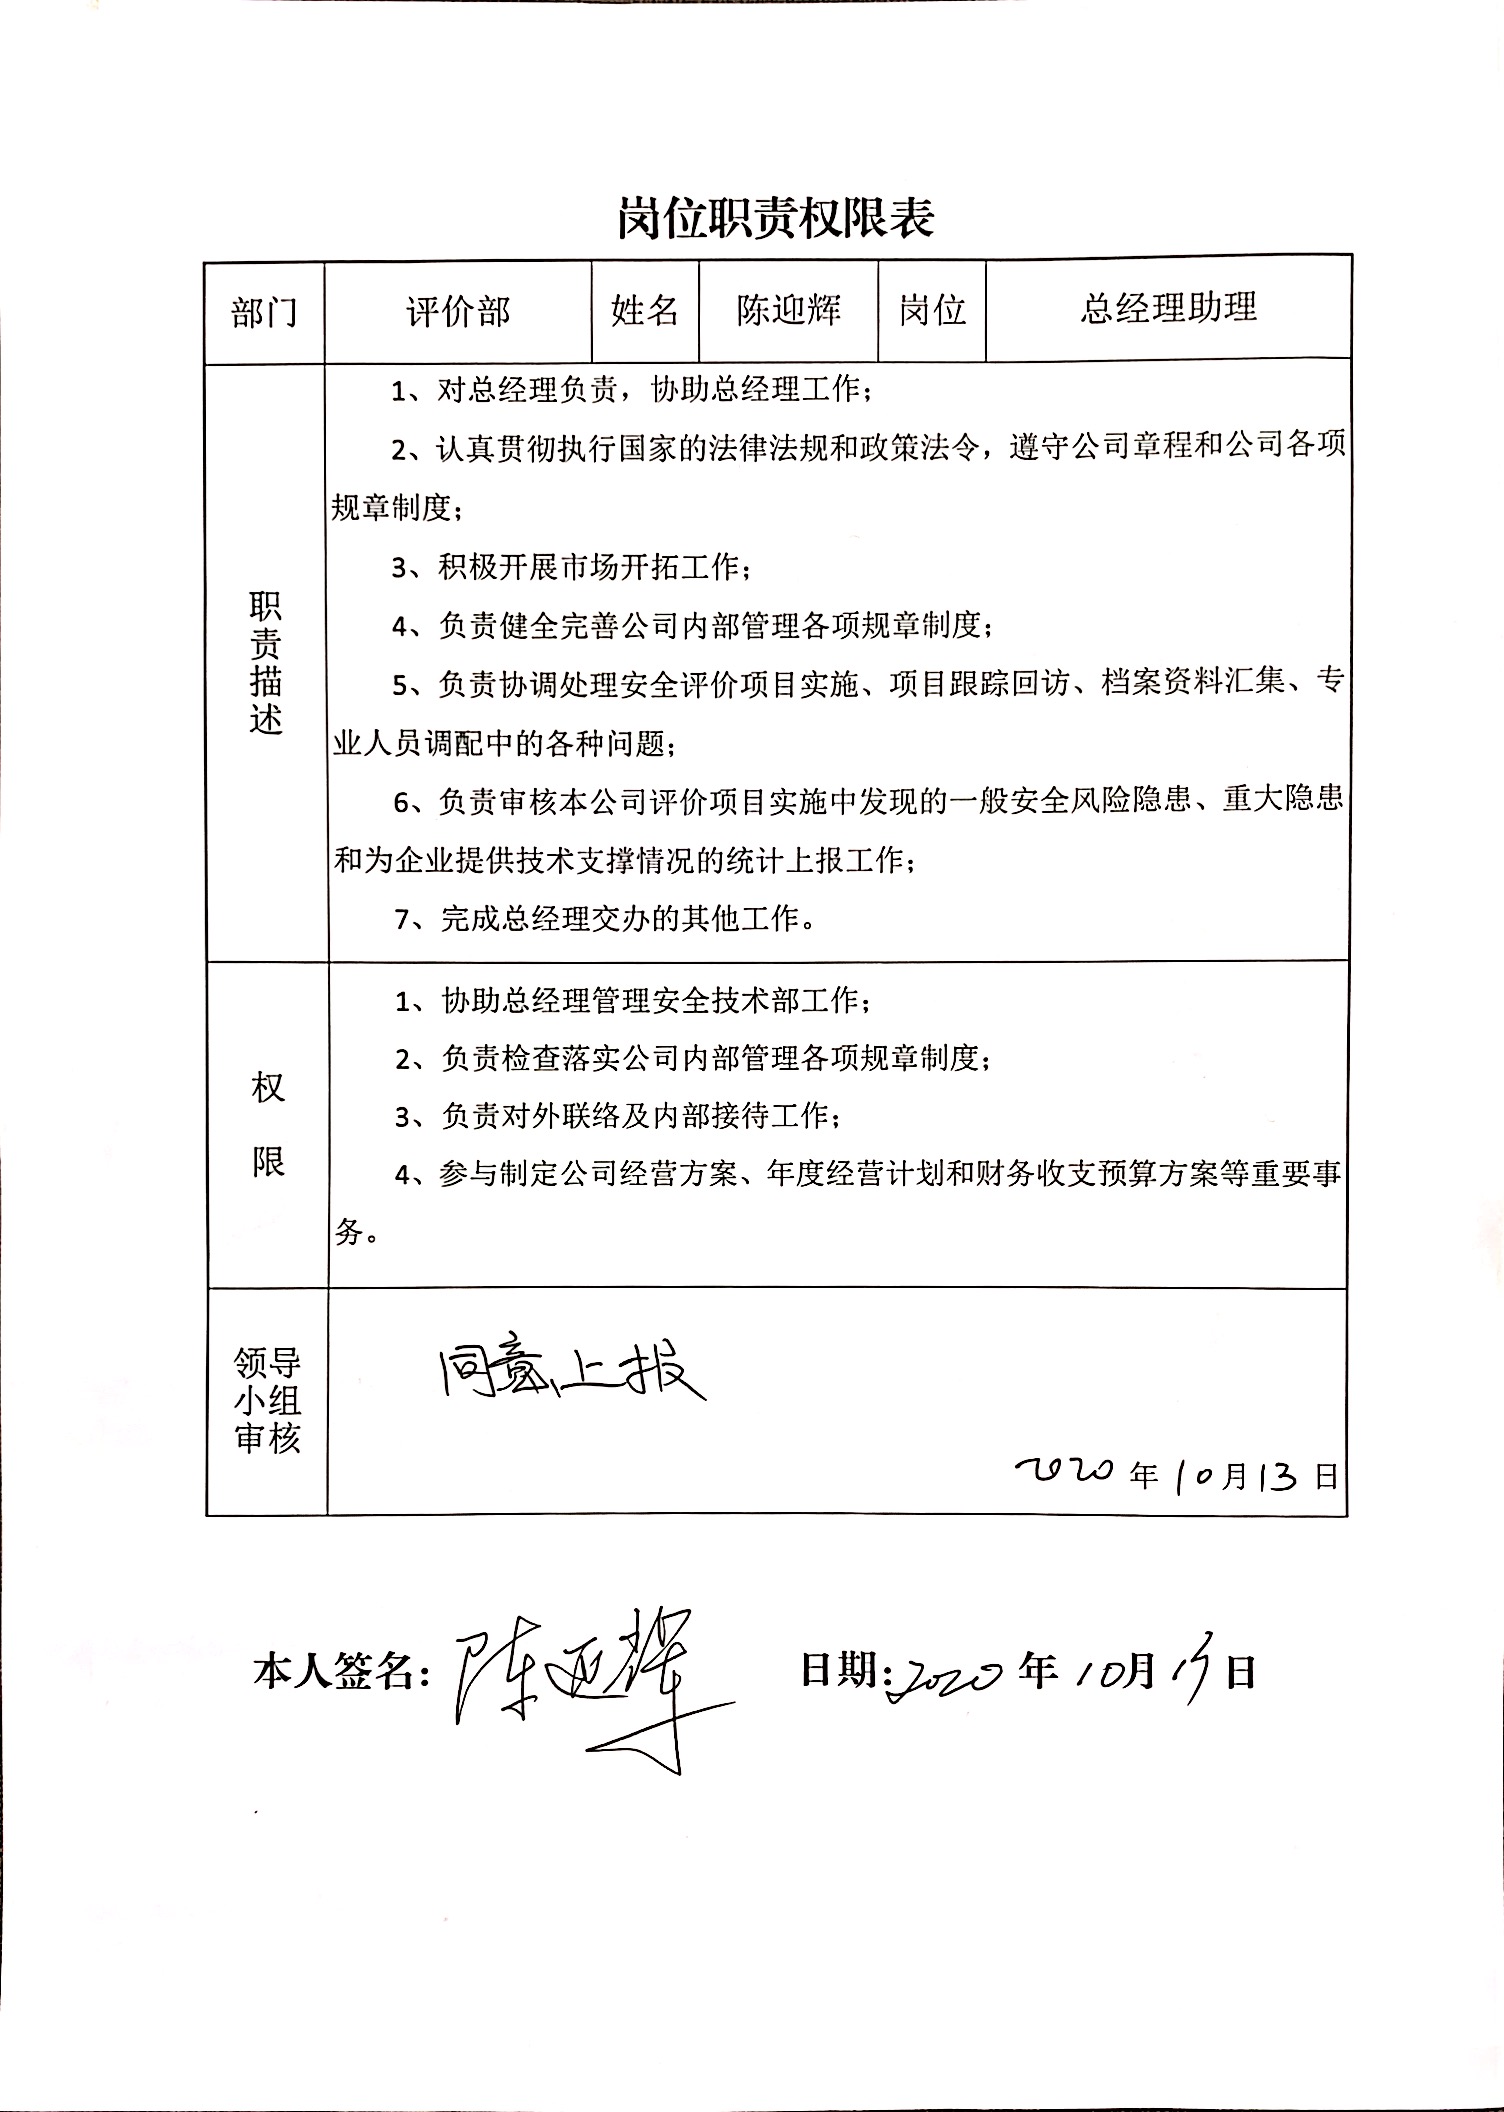 总经理助理岗位职责权限表.JPG